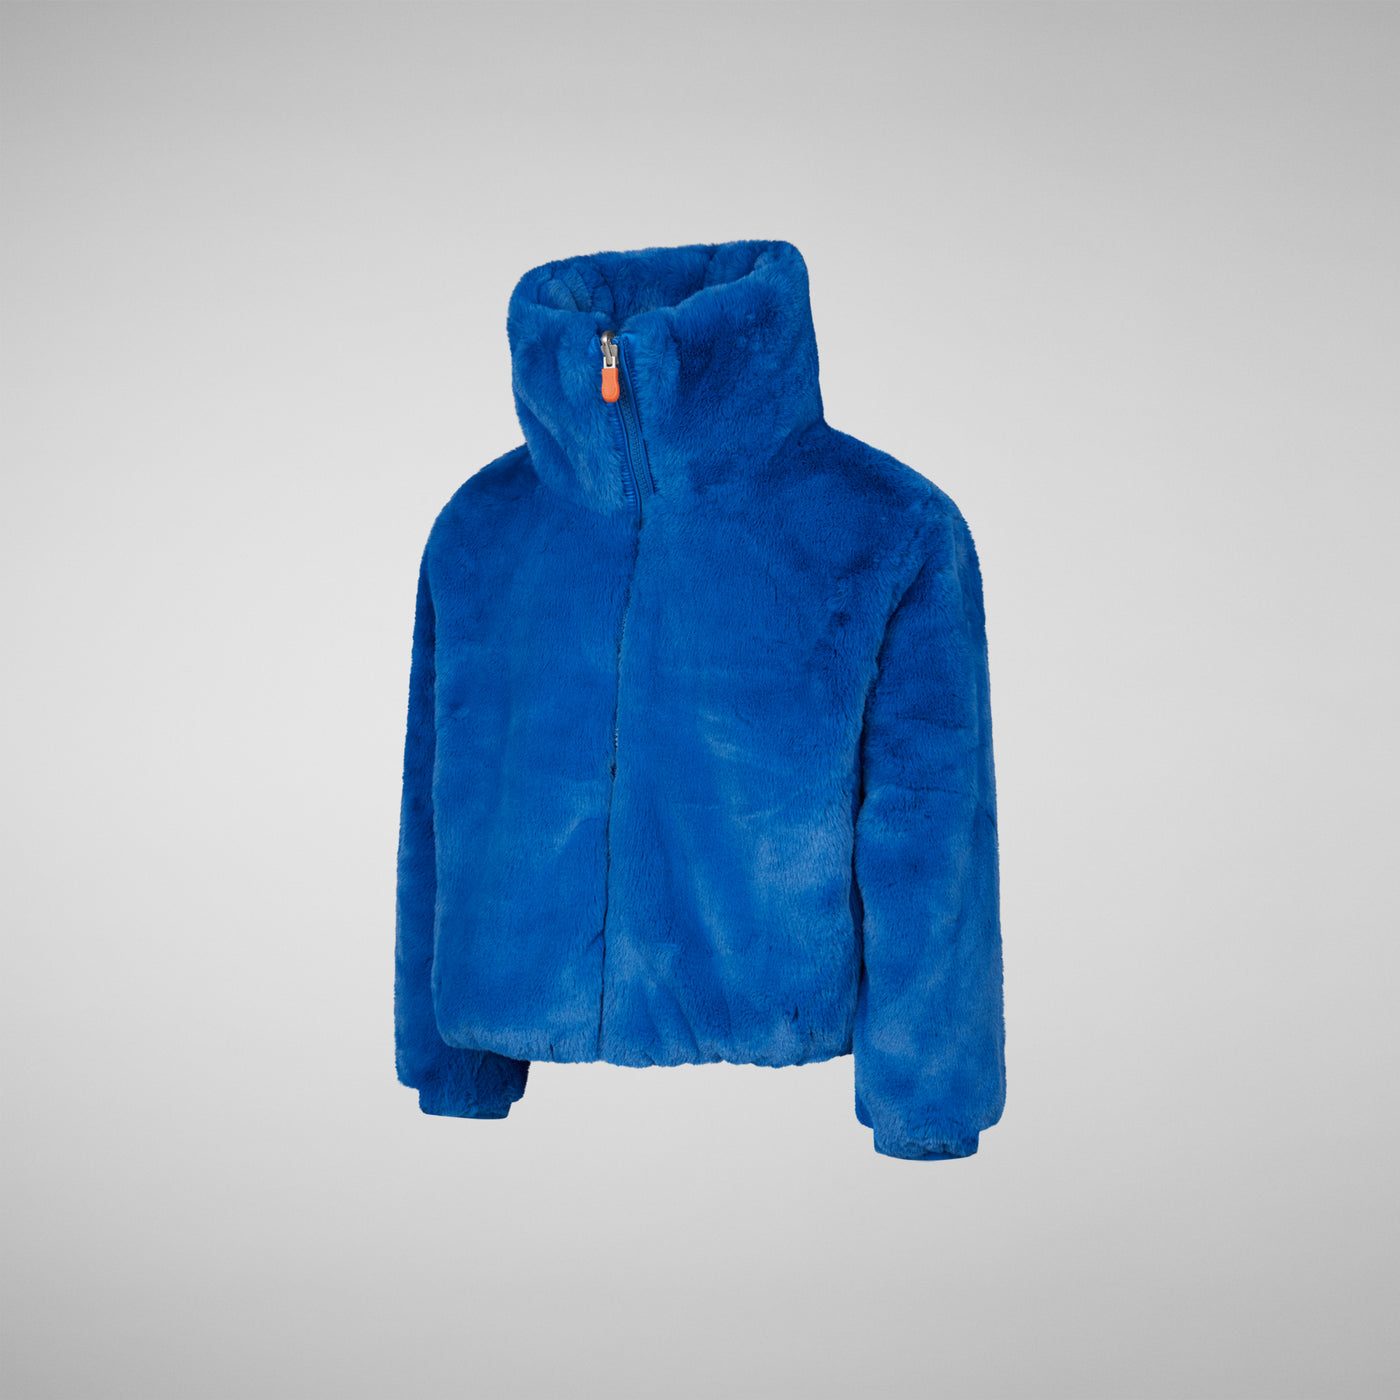 Girls' Ceri Faux Fur Reversible Jacket in Blue Berry